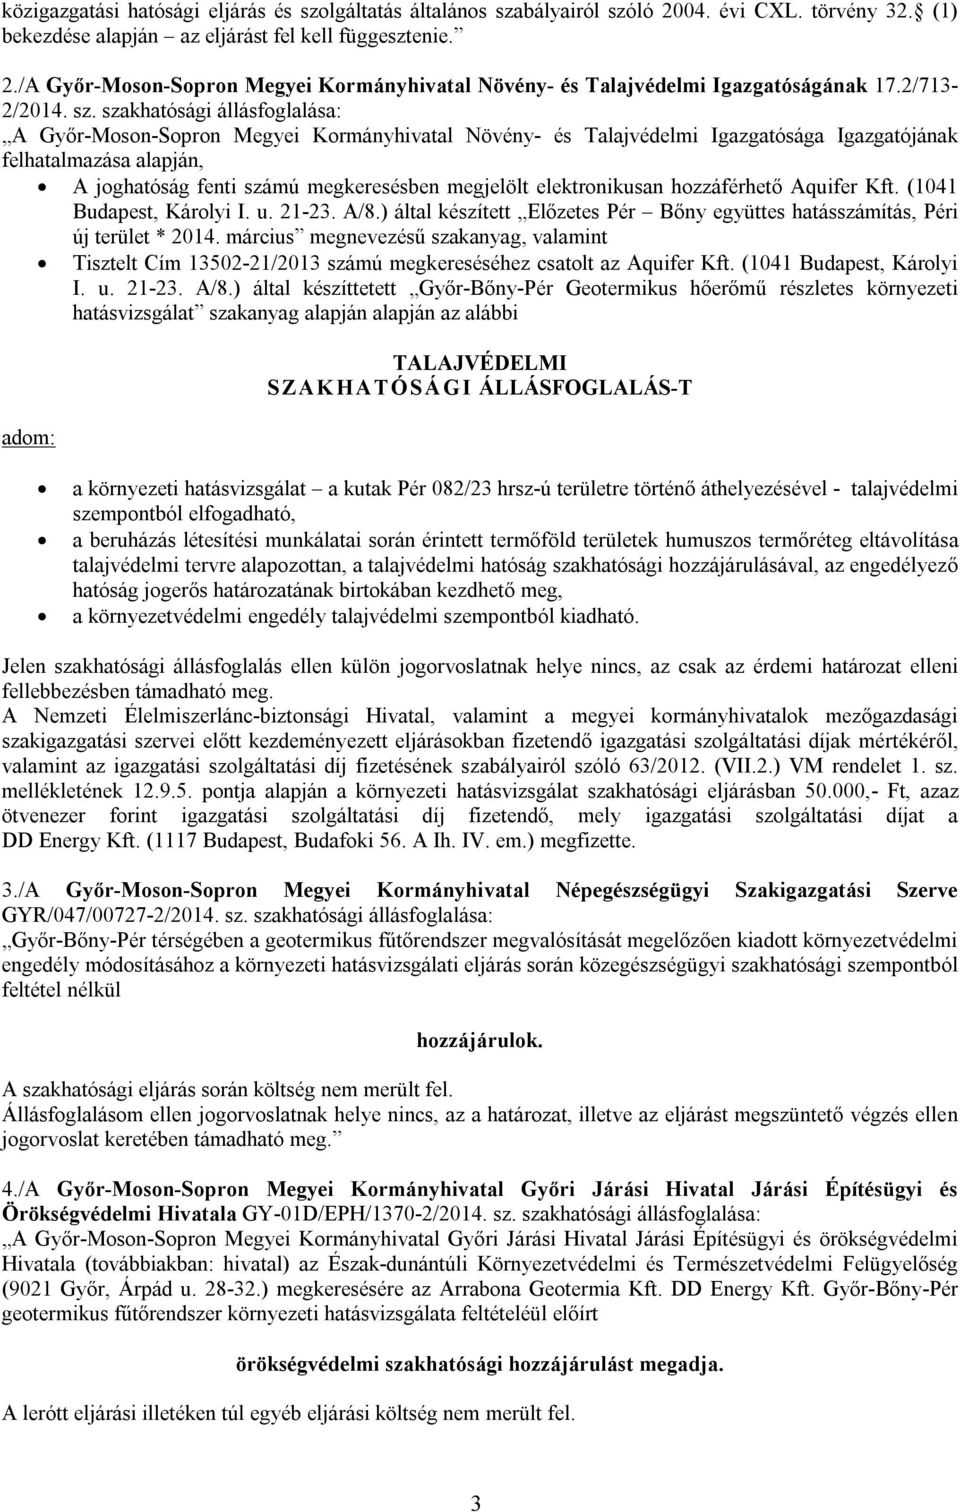 szakhatósági állásfoglalása: A Győr-Moson-Sopron Megyei Kormányhivatal Növény- és Talajvédelmi Igazgatósága Igazgatójának felhatalmazása alapján, A joghatóság fenti számú megkeresésben megjelölt